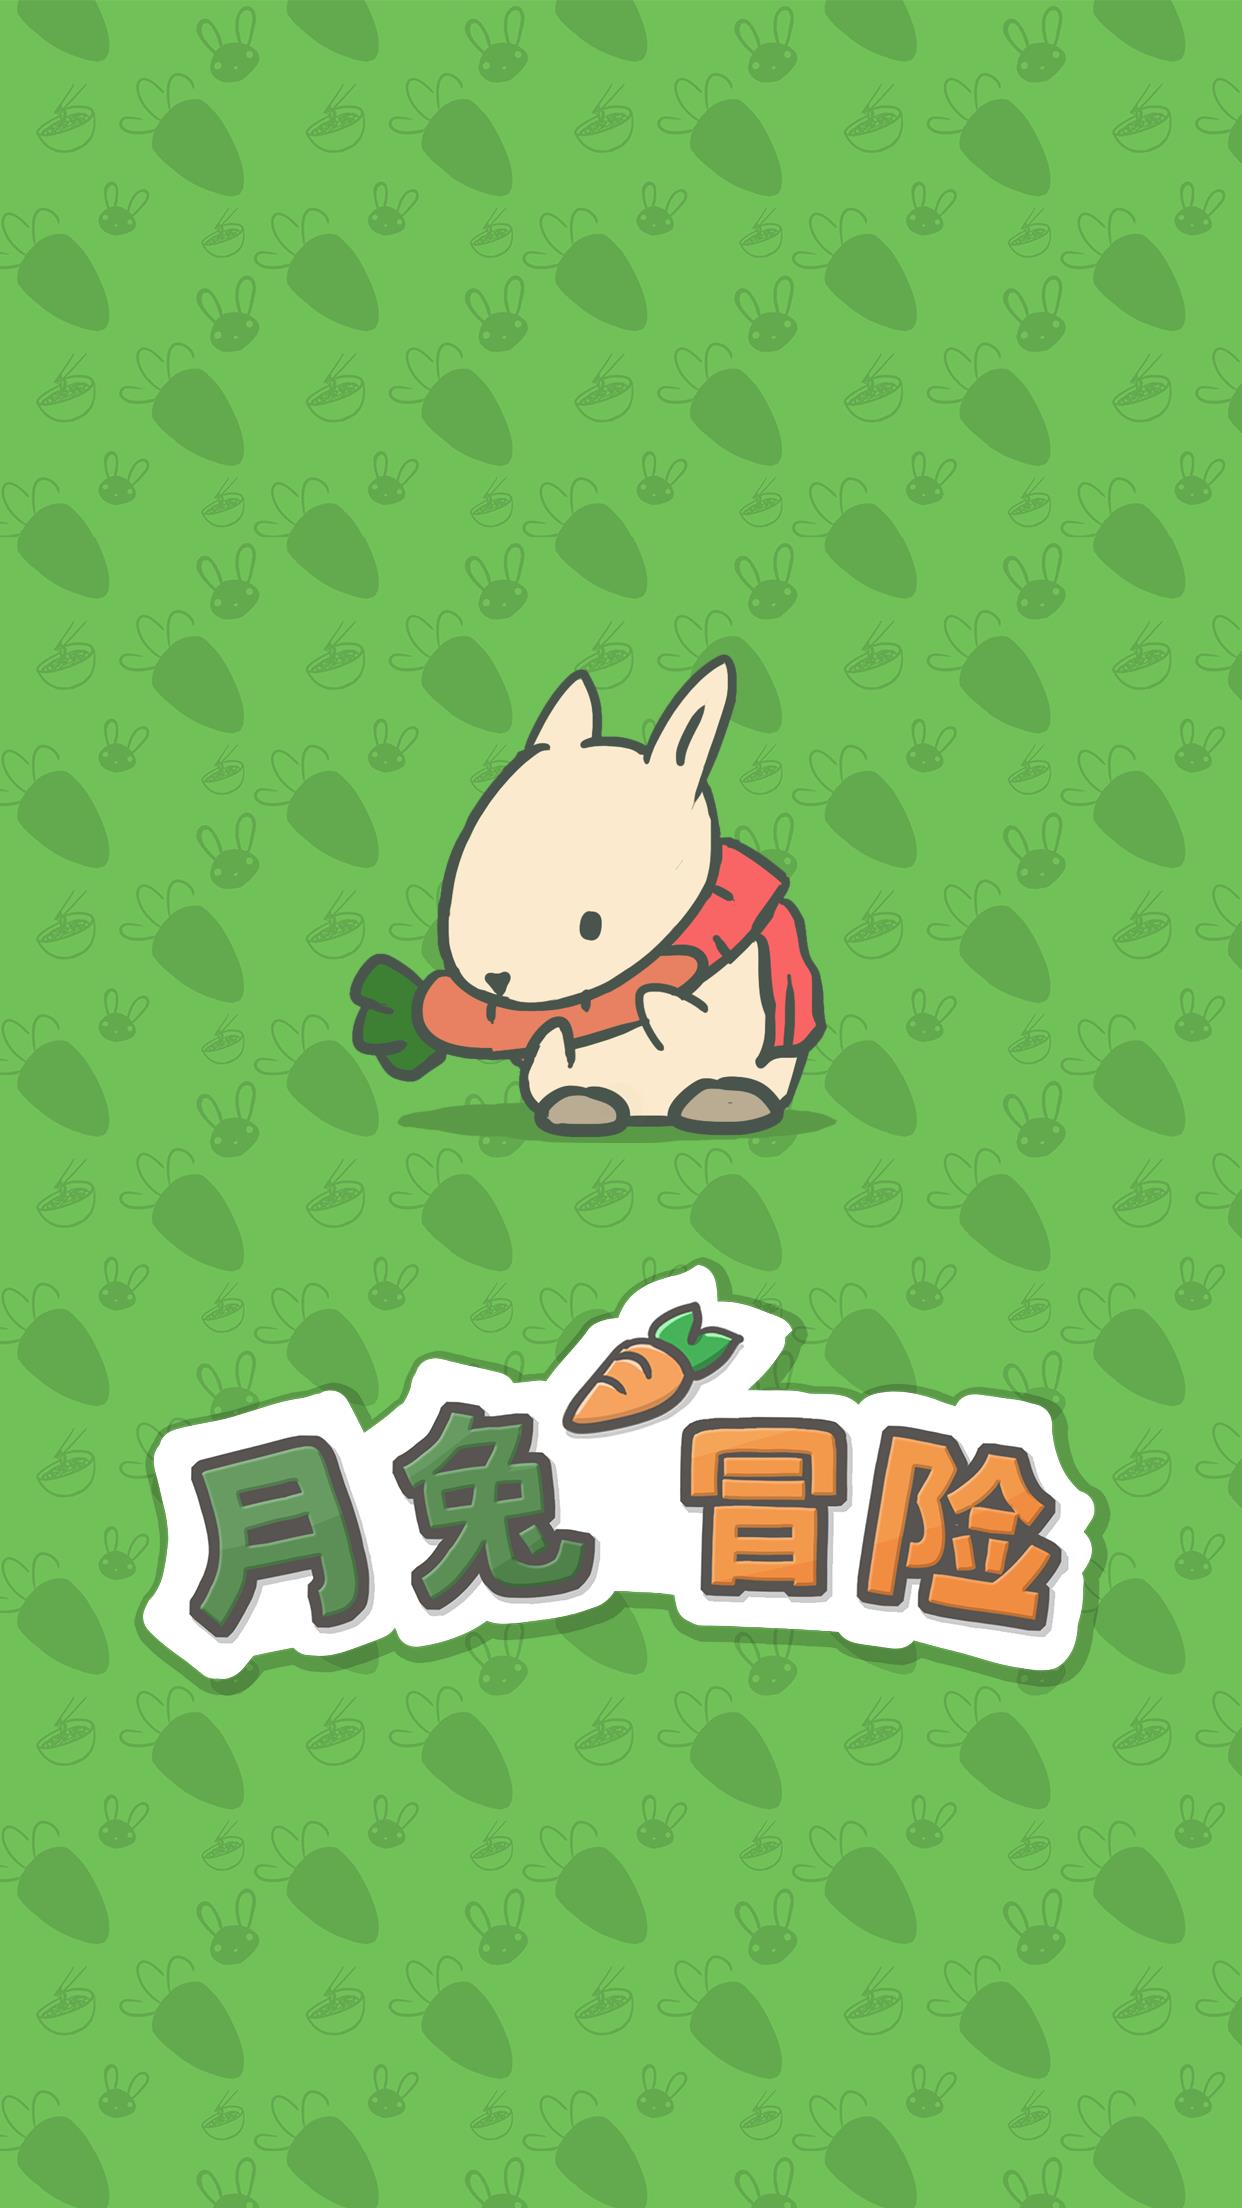 月兔冒险 (Tsuki)